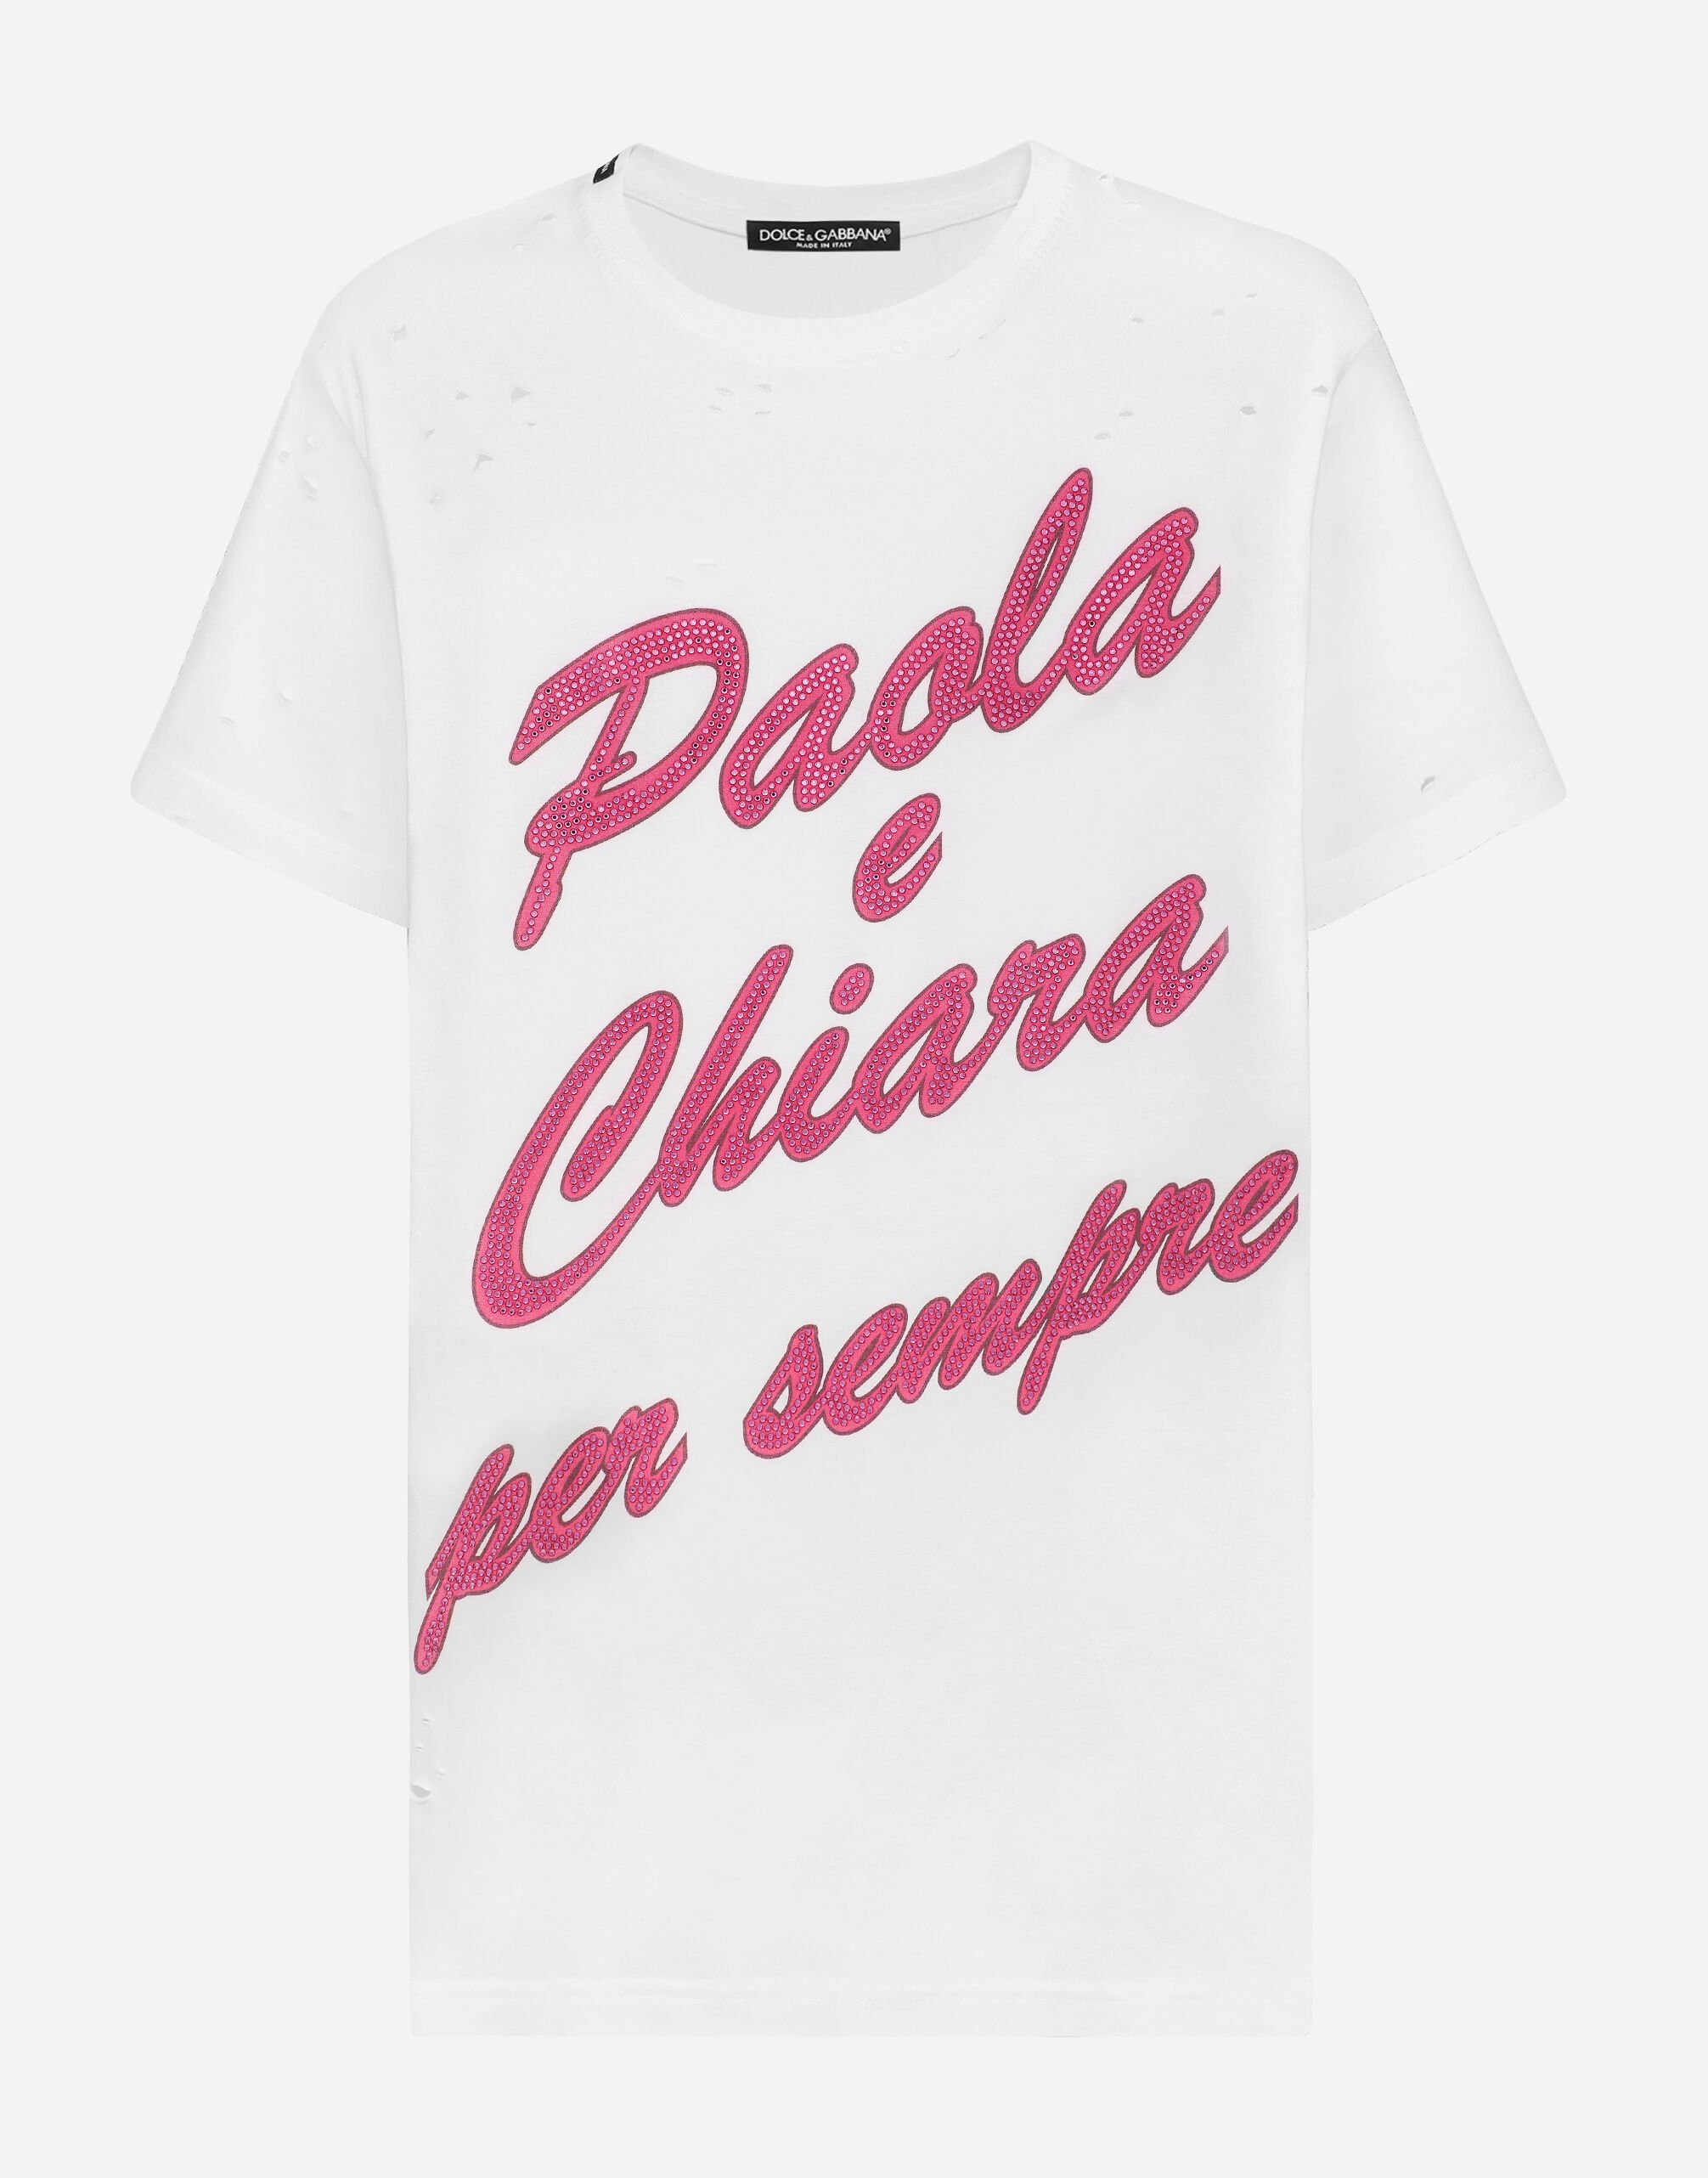 Dolce&Gabbana "Paola e Chiara per sempre" T-shirt White I8AOHMG7K9Z